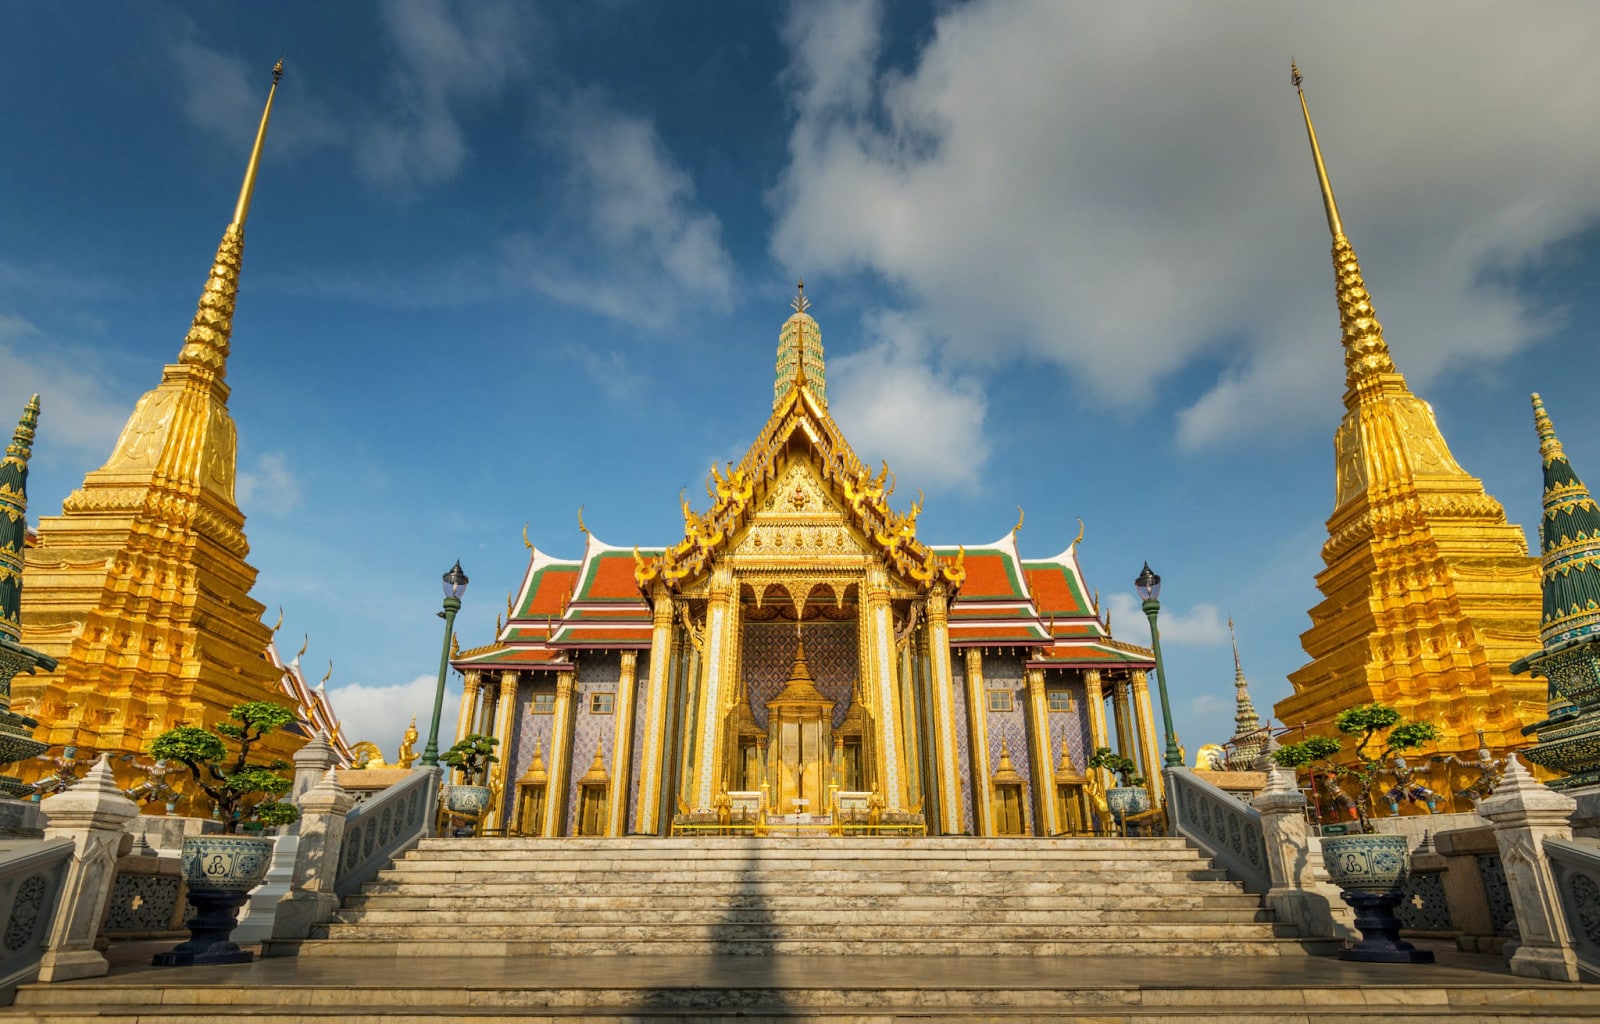 The Wat Phra Kaew in Bangkok